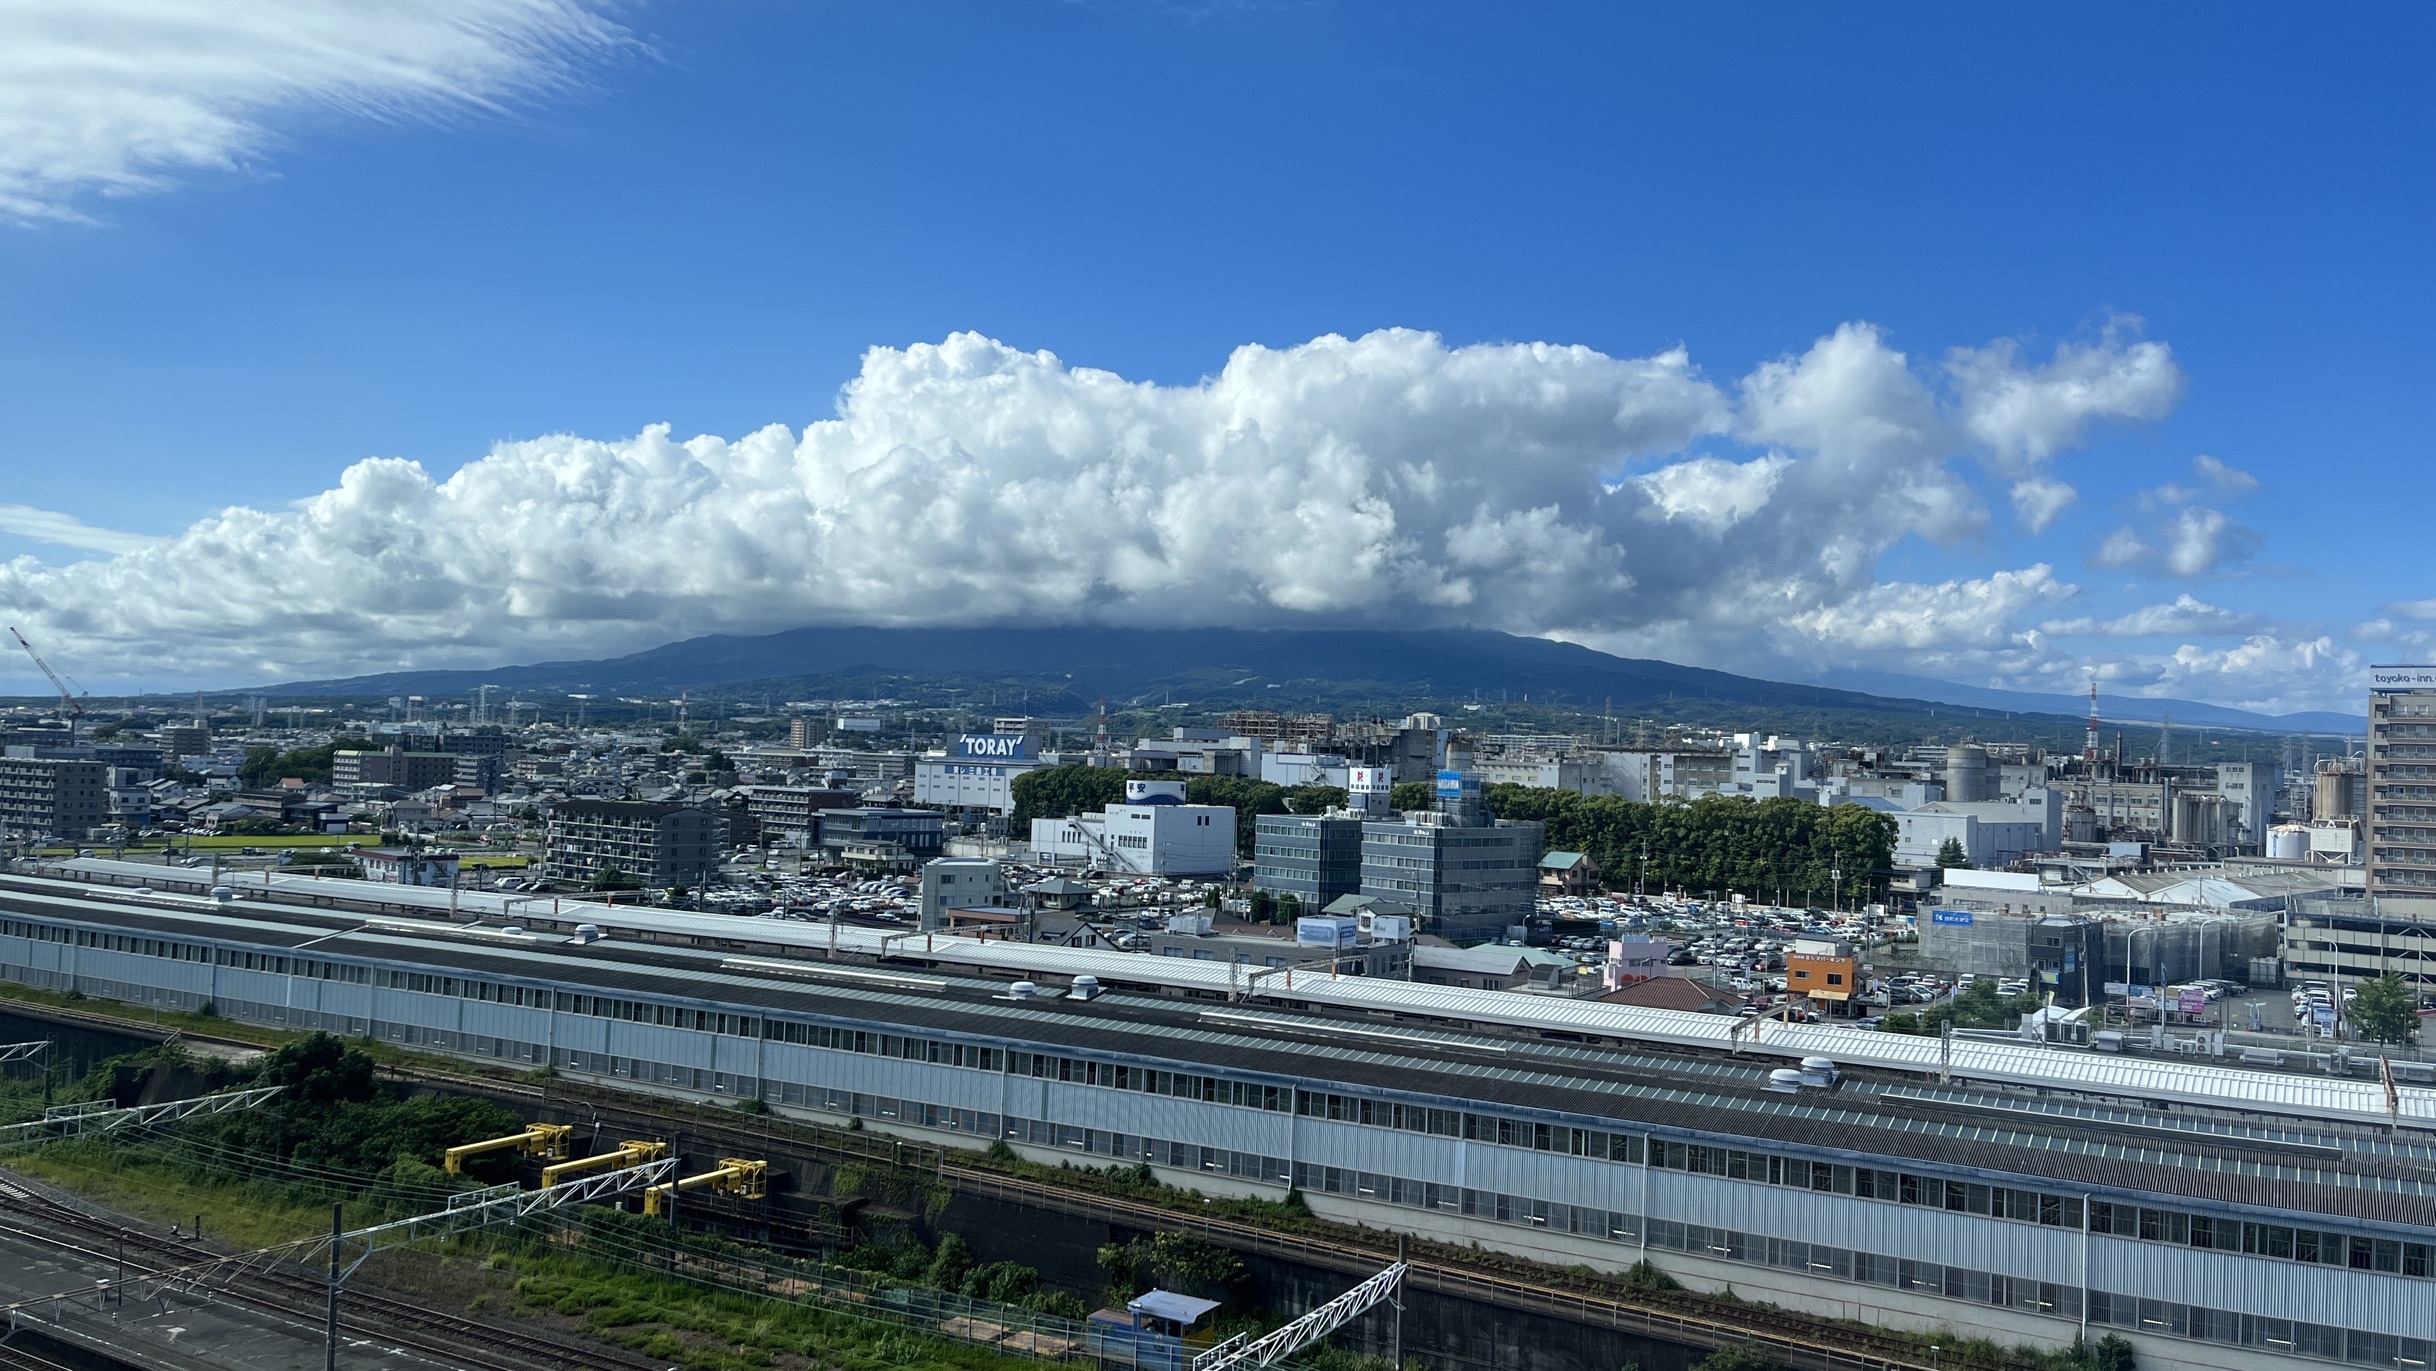 这家酒店地处三岛站南口，酒店与JR入口相连，位置很完美，边上吃的也多，房间正对着富士山。环境很优美。